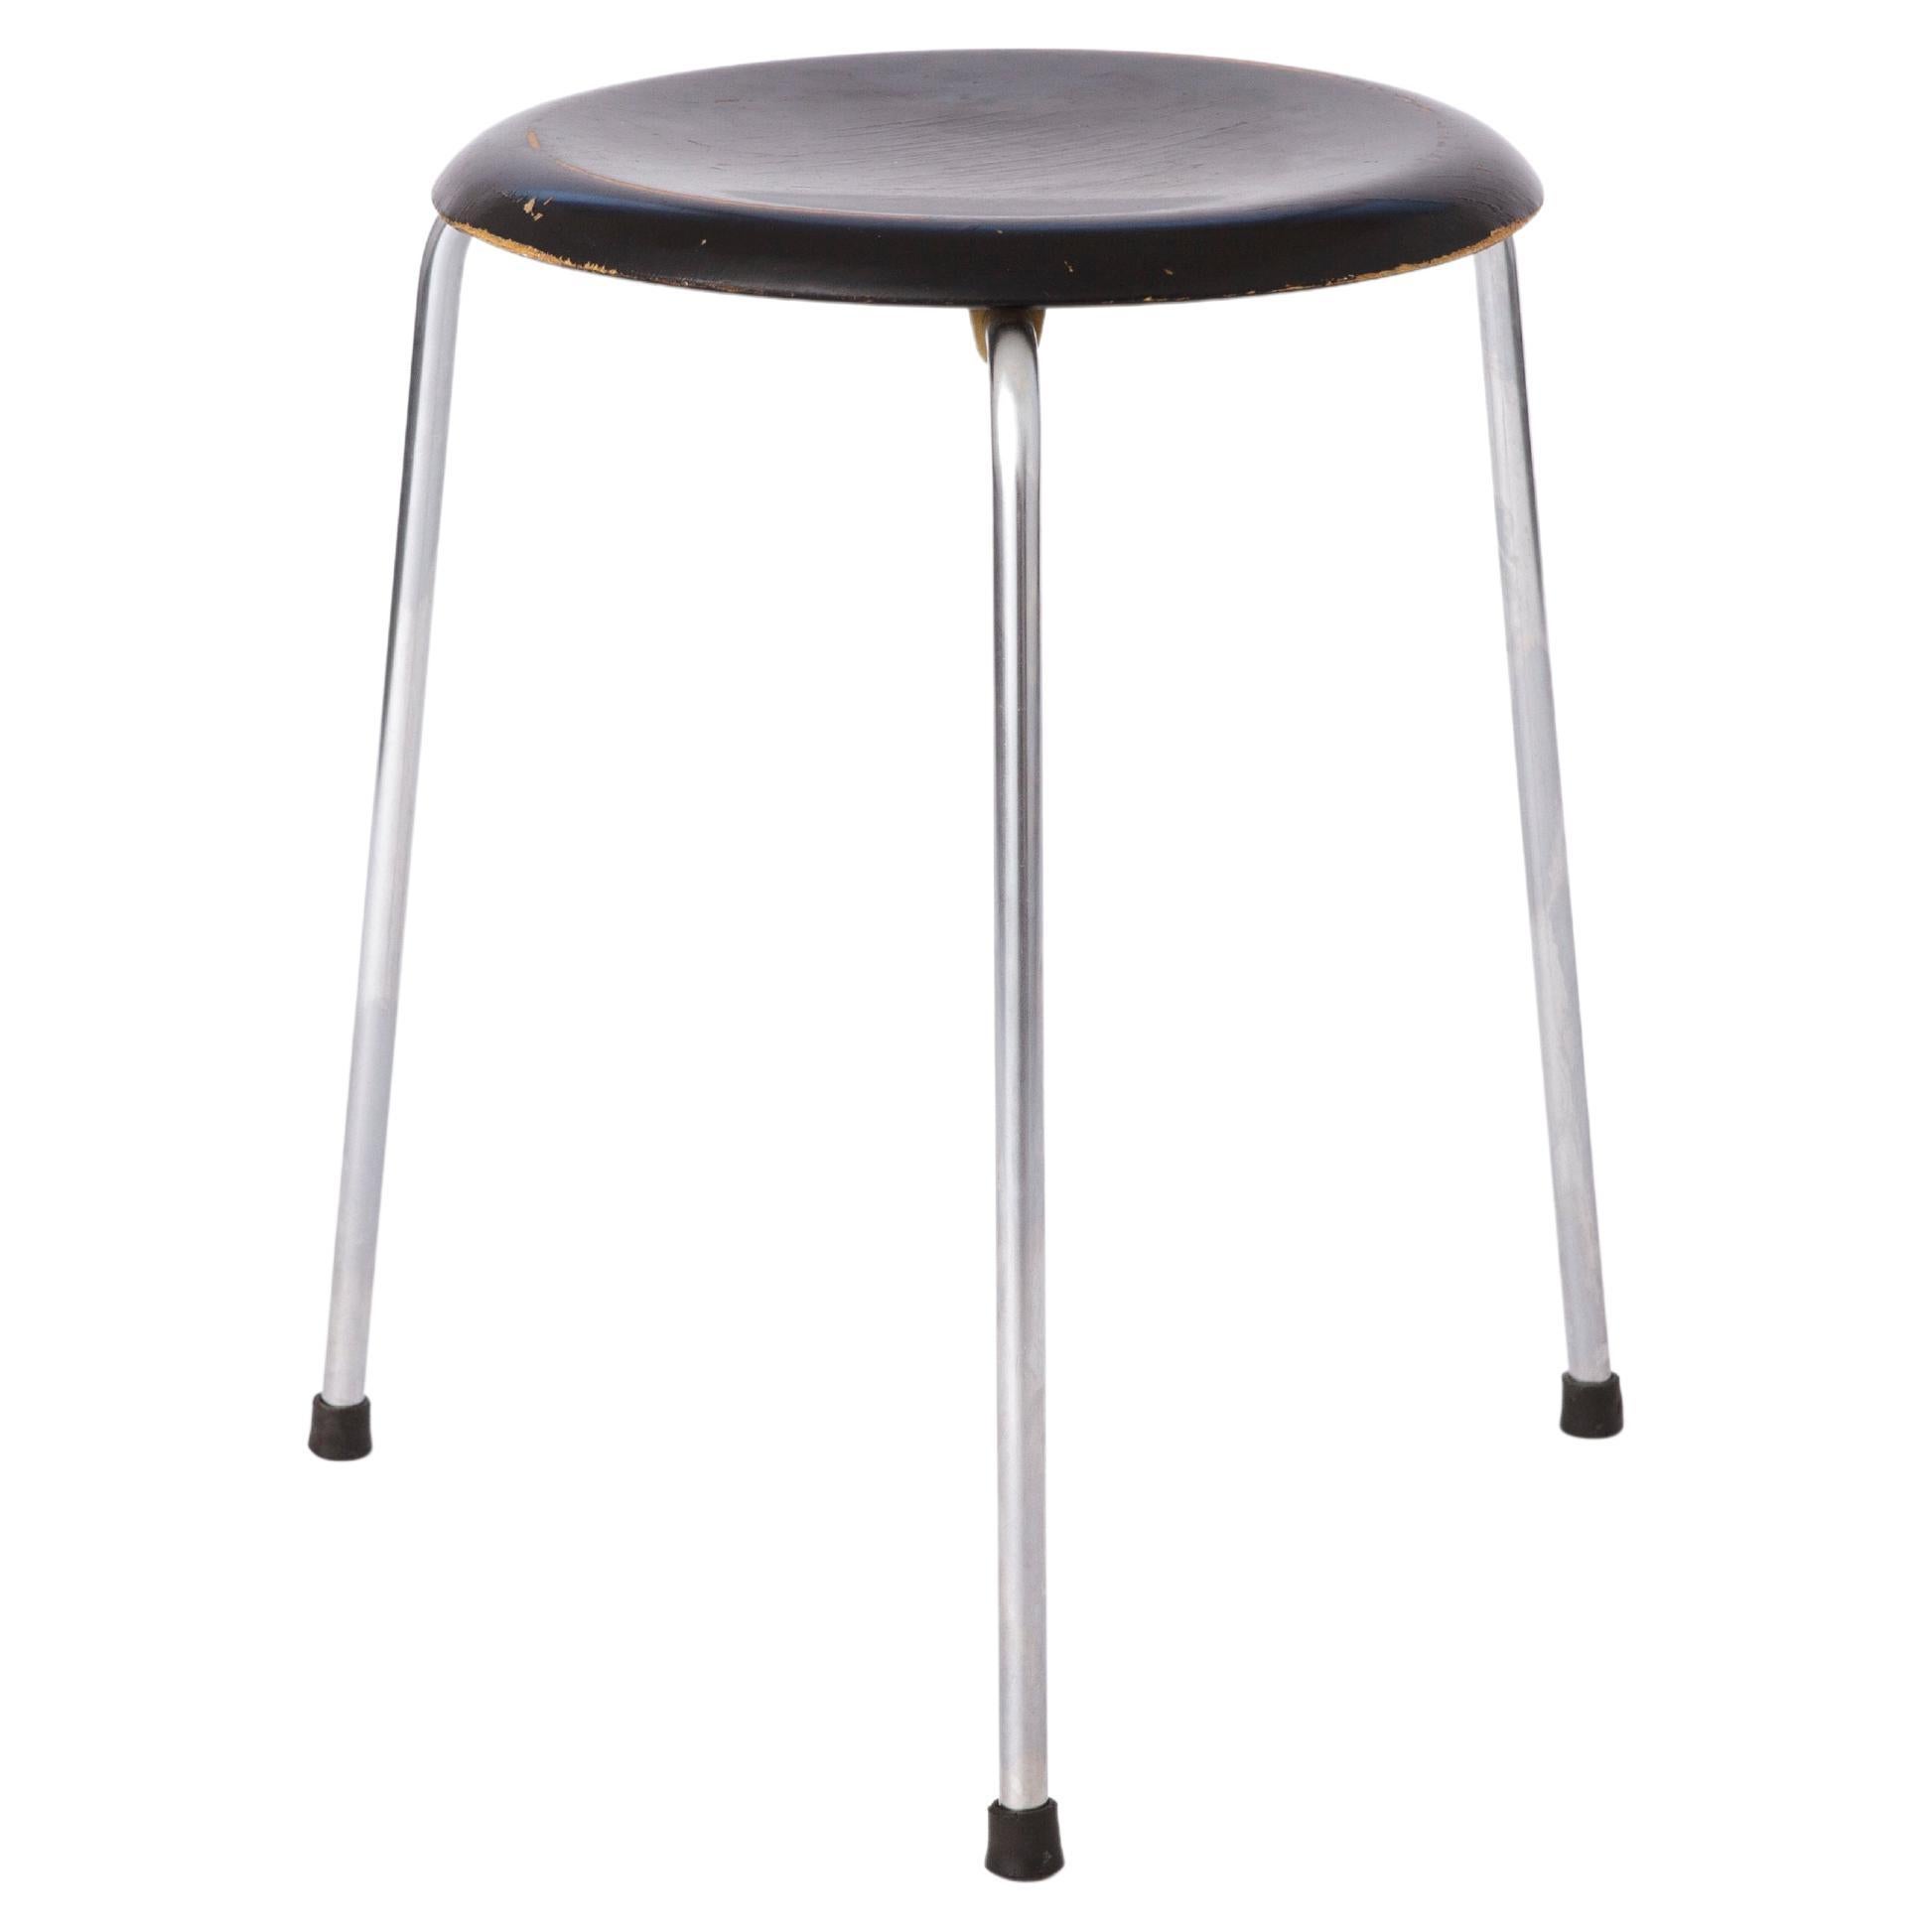 Rare vintage stool model 3170 by Arne Jacobsen for Fritz Hansen, 1950's